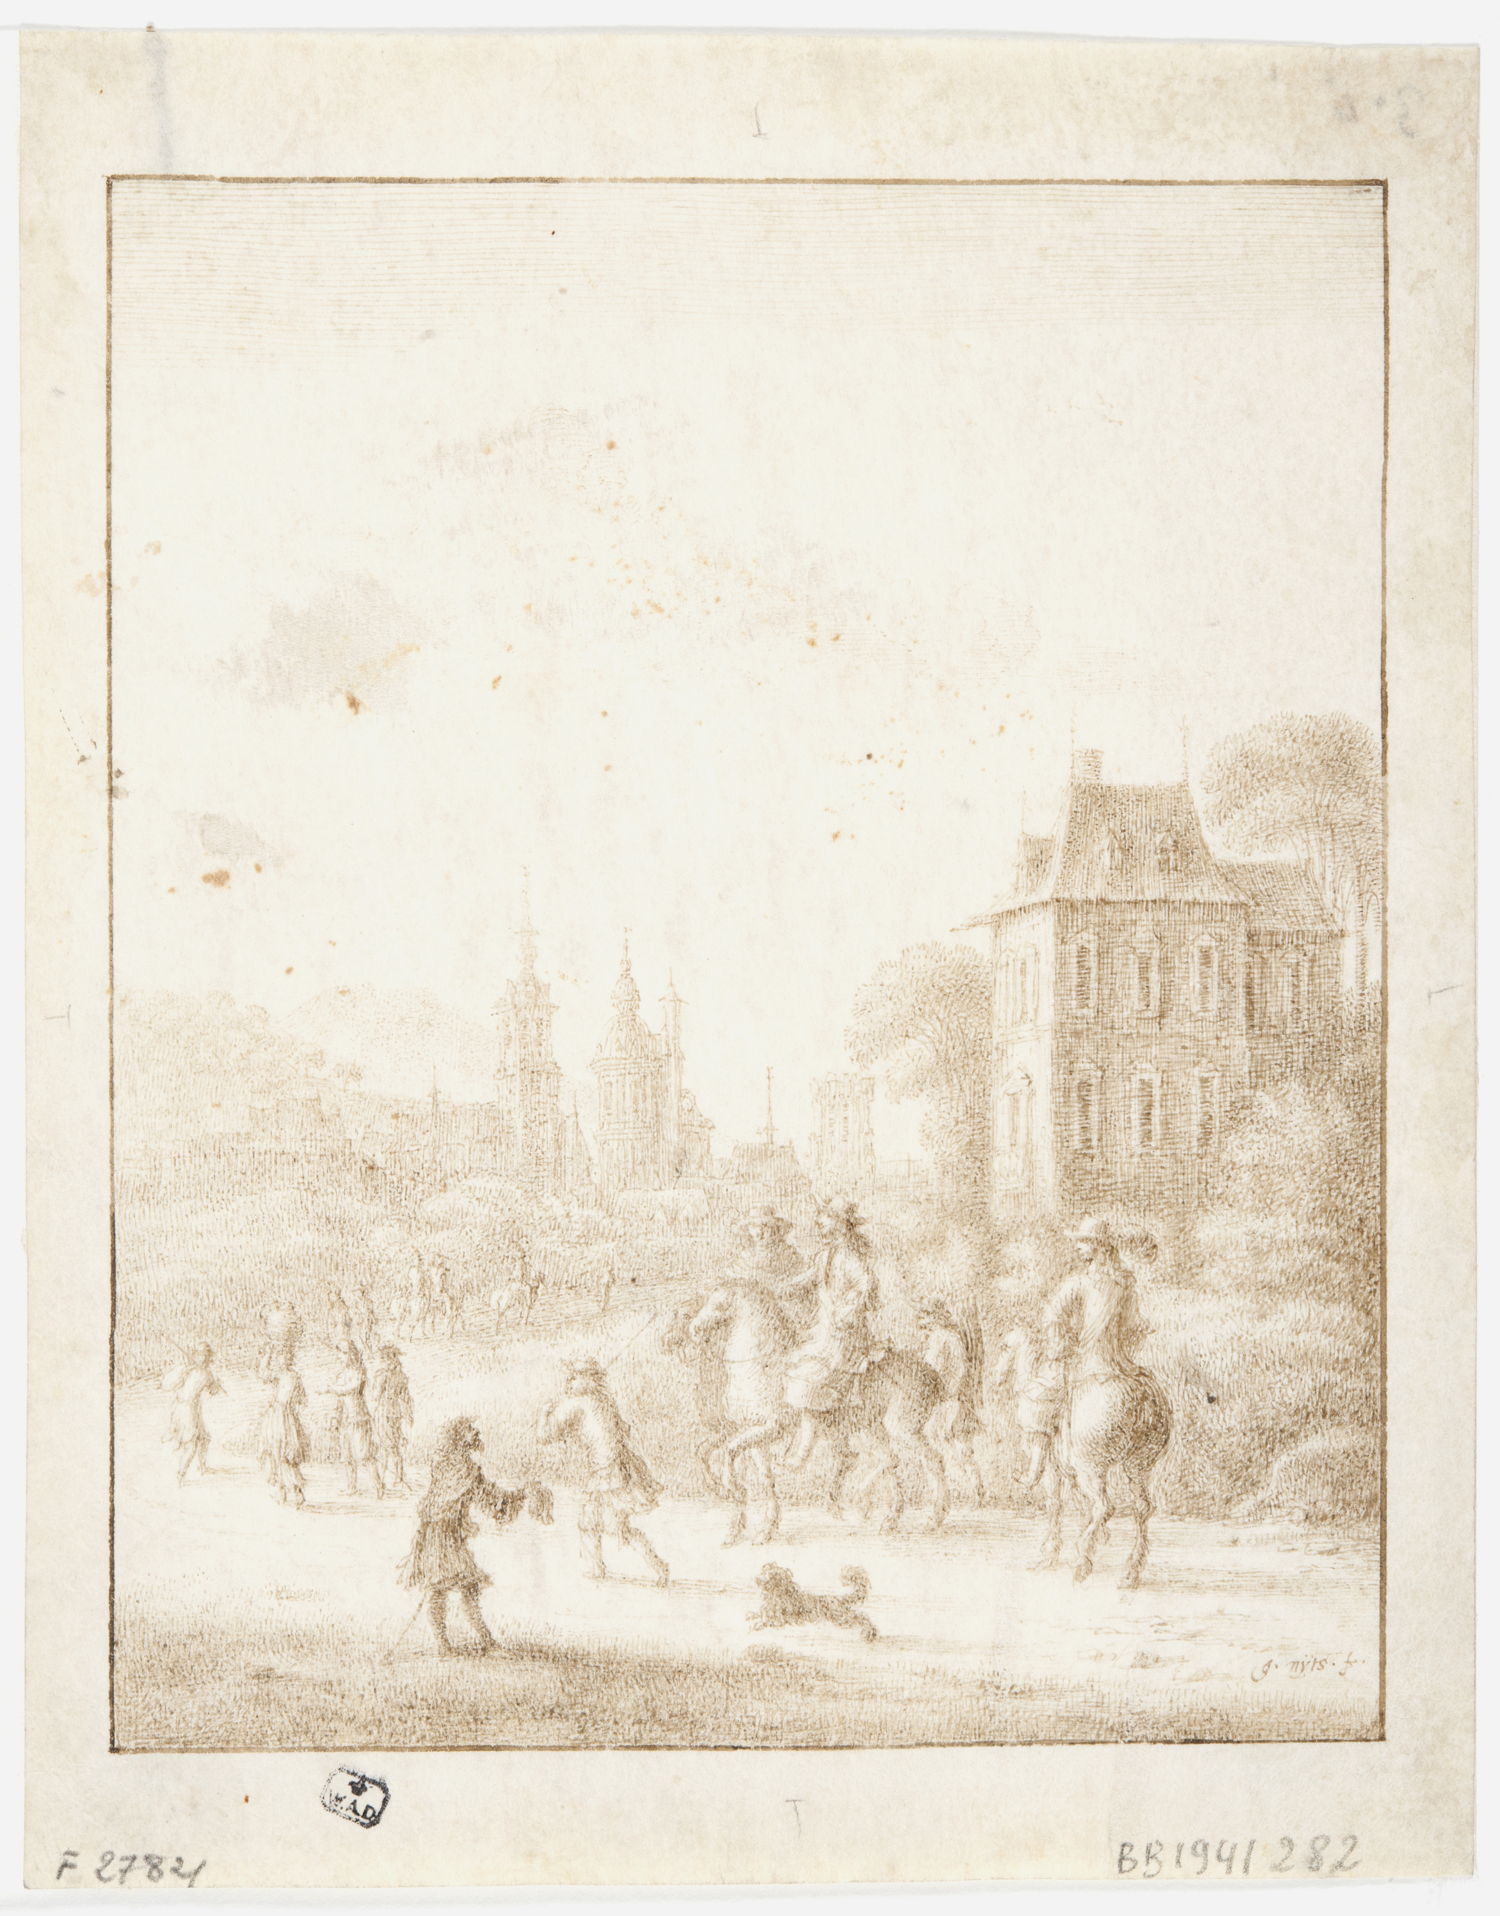 Gezicht op het Kattenberghof in Antwerpen met ruiters op de voorgrond door Gillis Neyts (ca. 1618 - 1687).